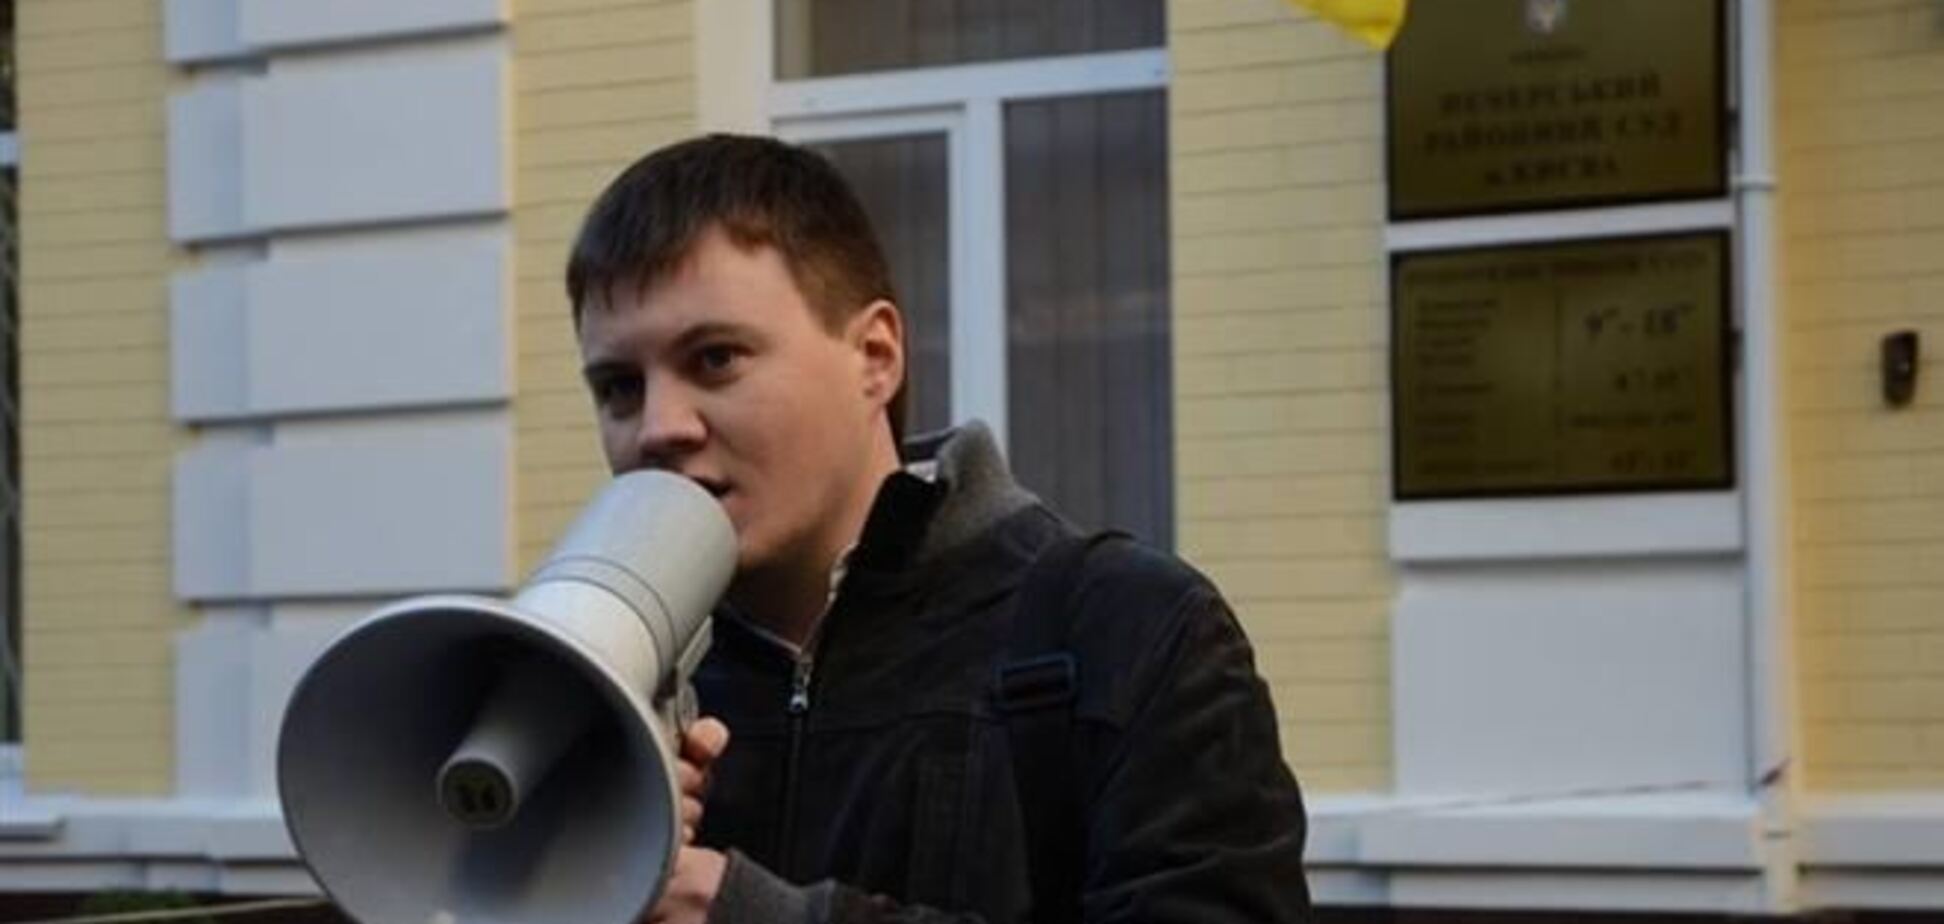 Аронец призывает украинцев продолжить участие в Евромайдане